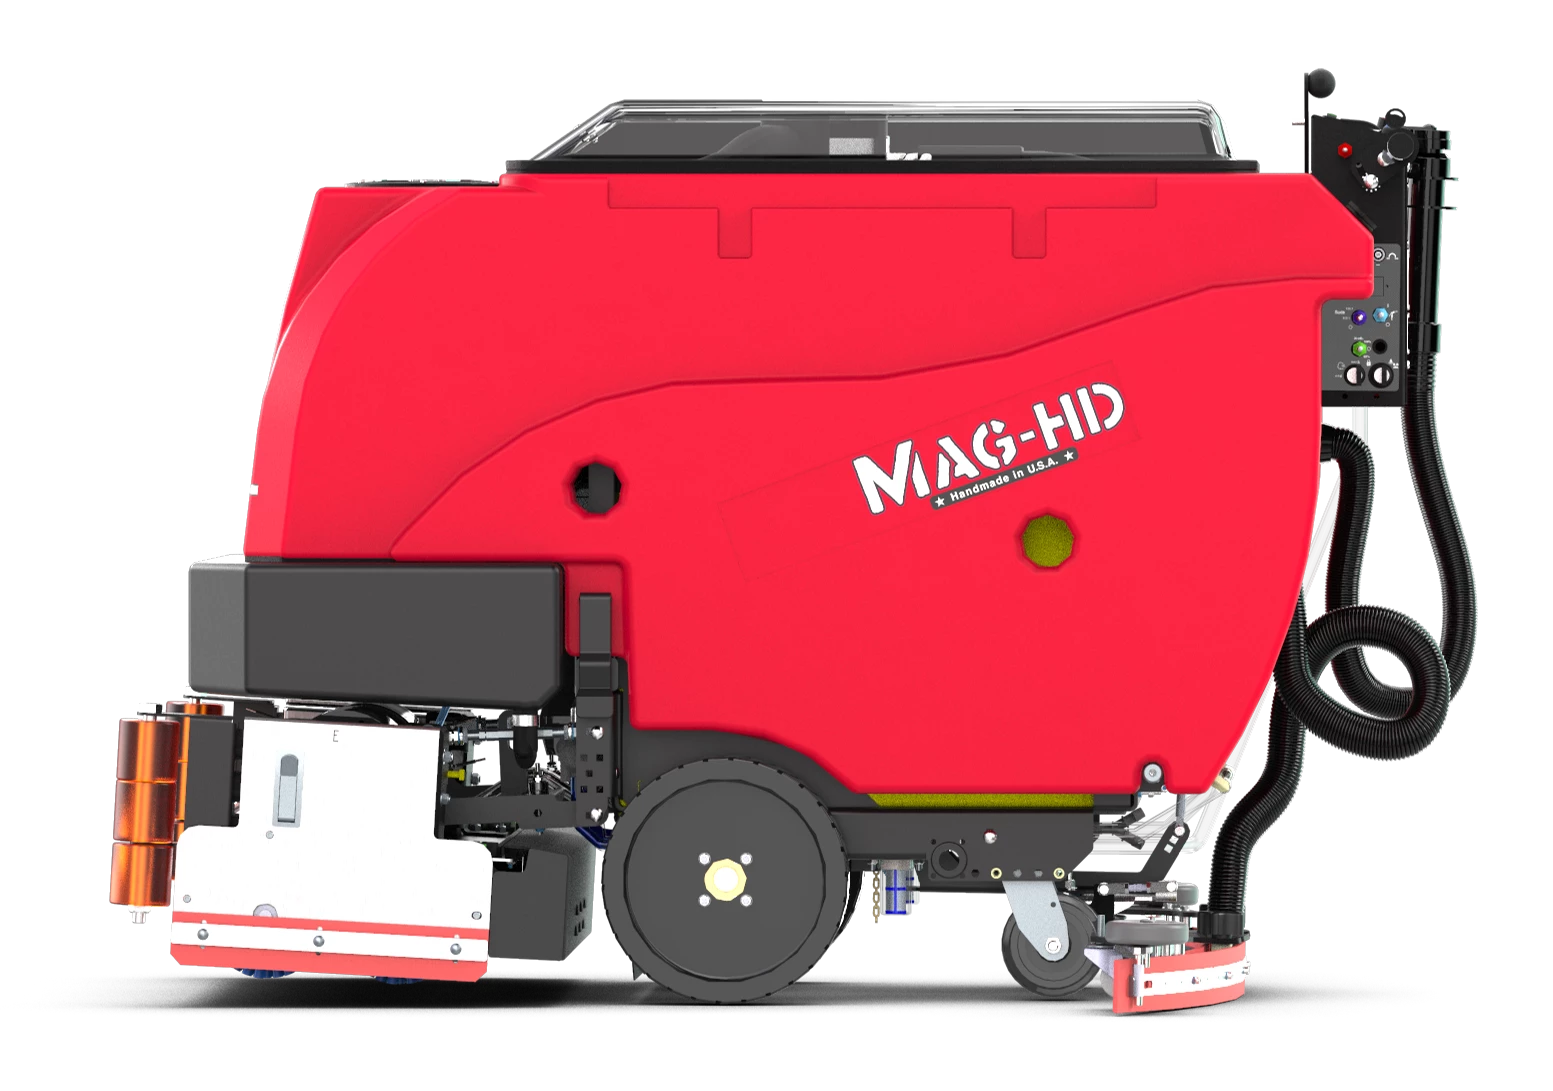 Ročno vodeni stroj za mokro čiščenje tal Factory Cat Mag HD 33C